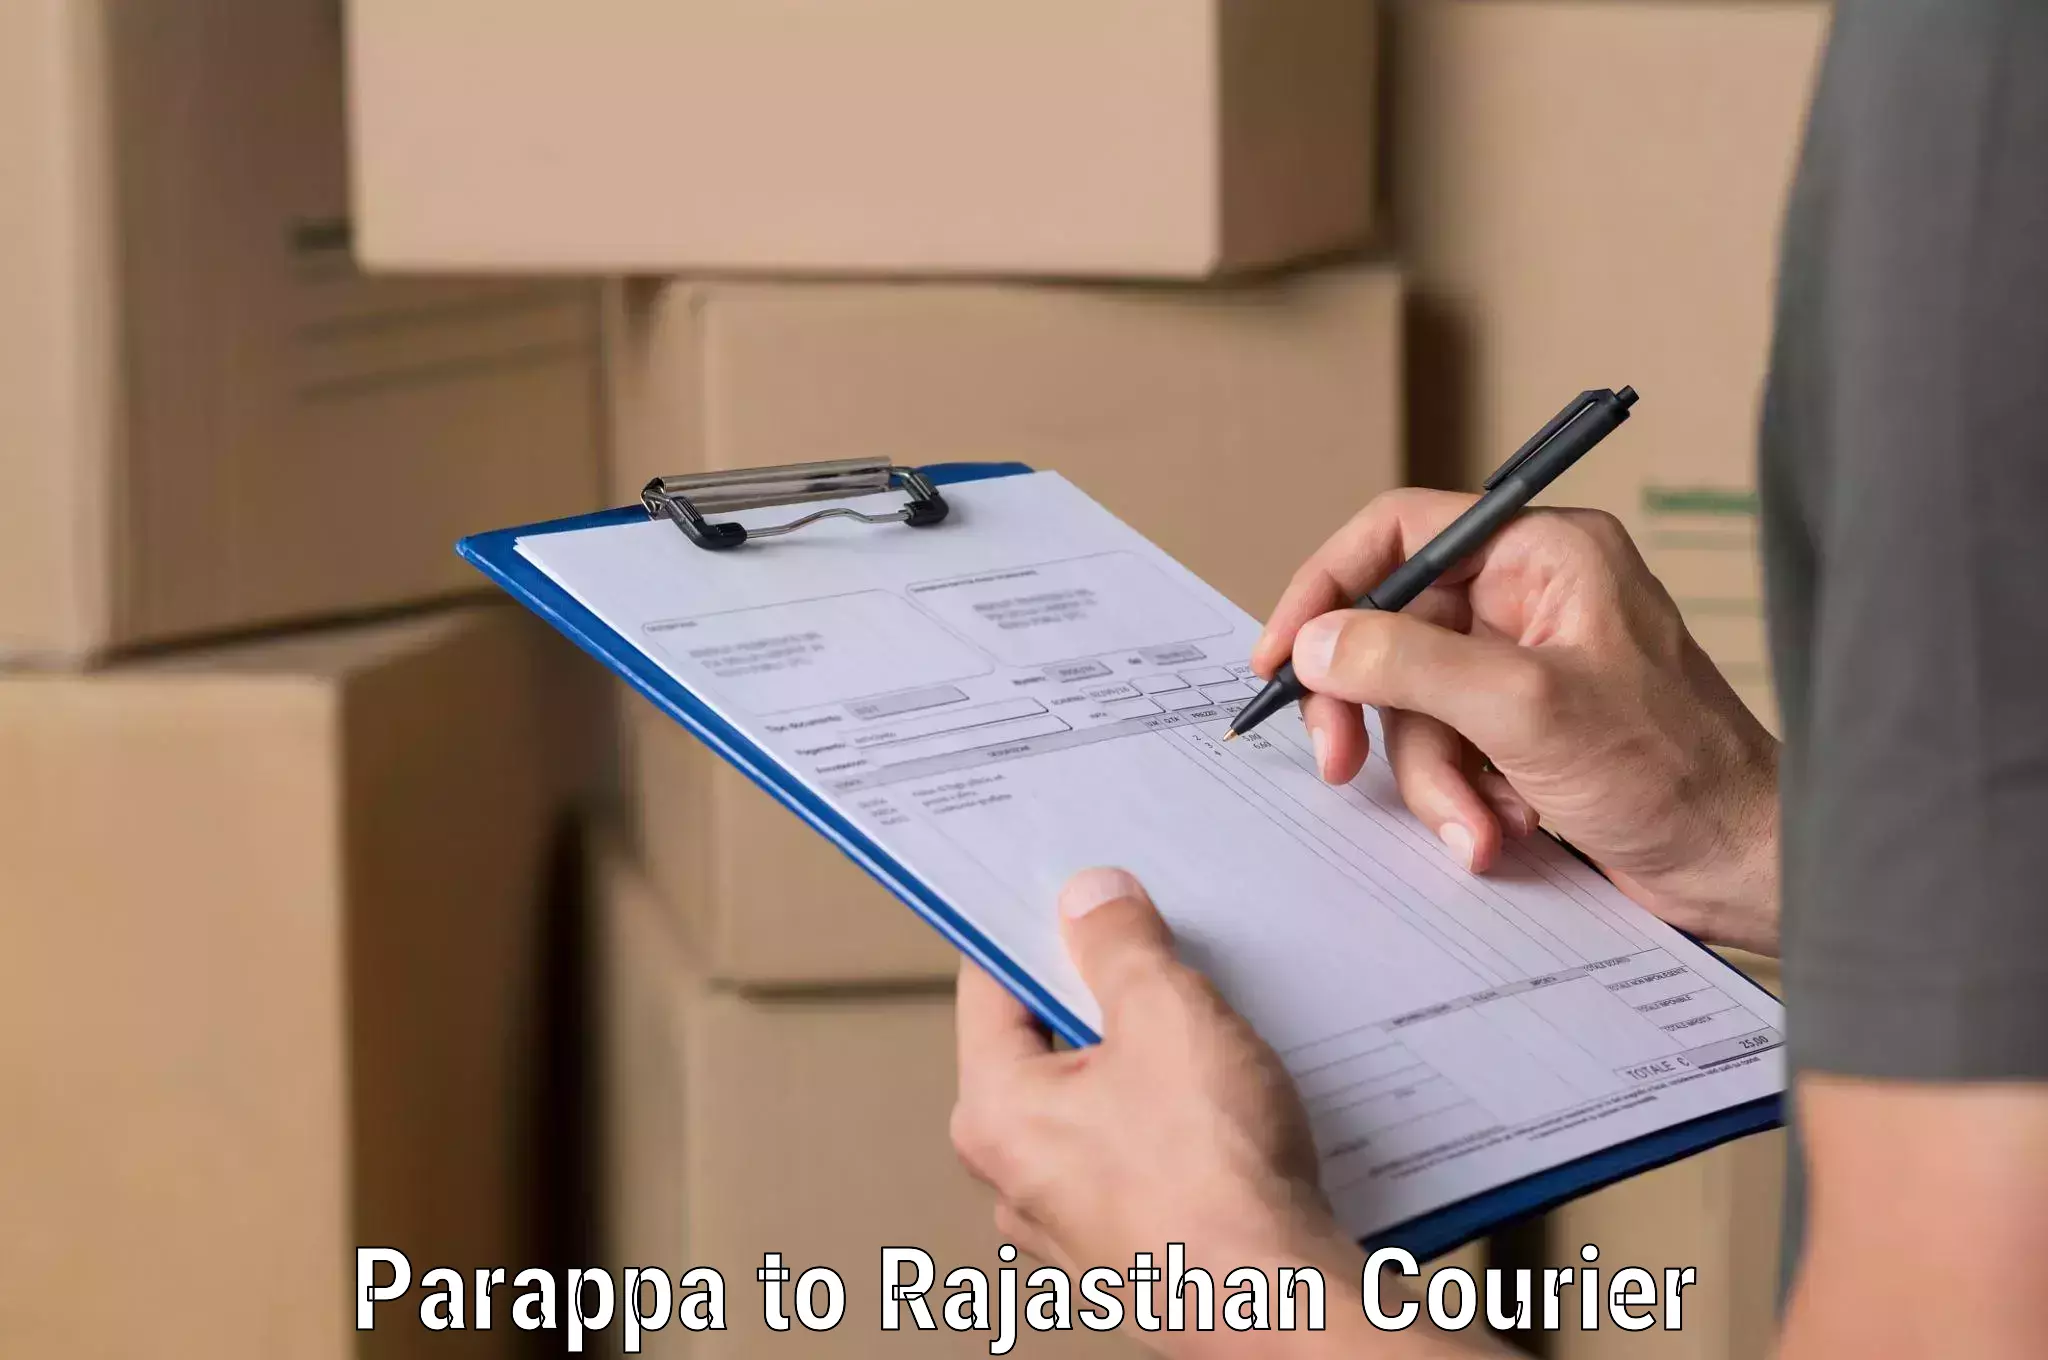 Automated shipping processes Parappa to Sri Vijaynagar